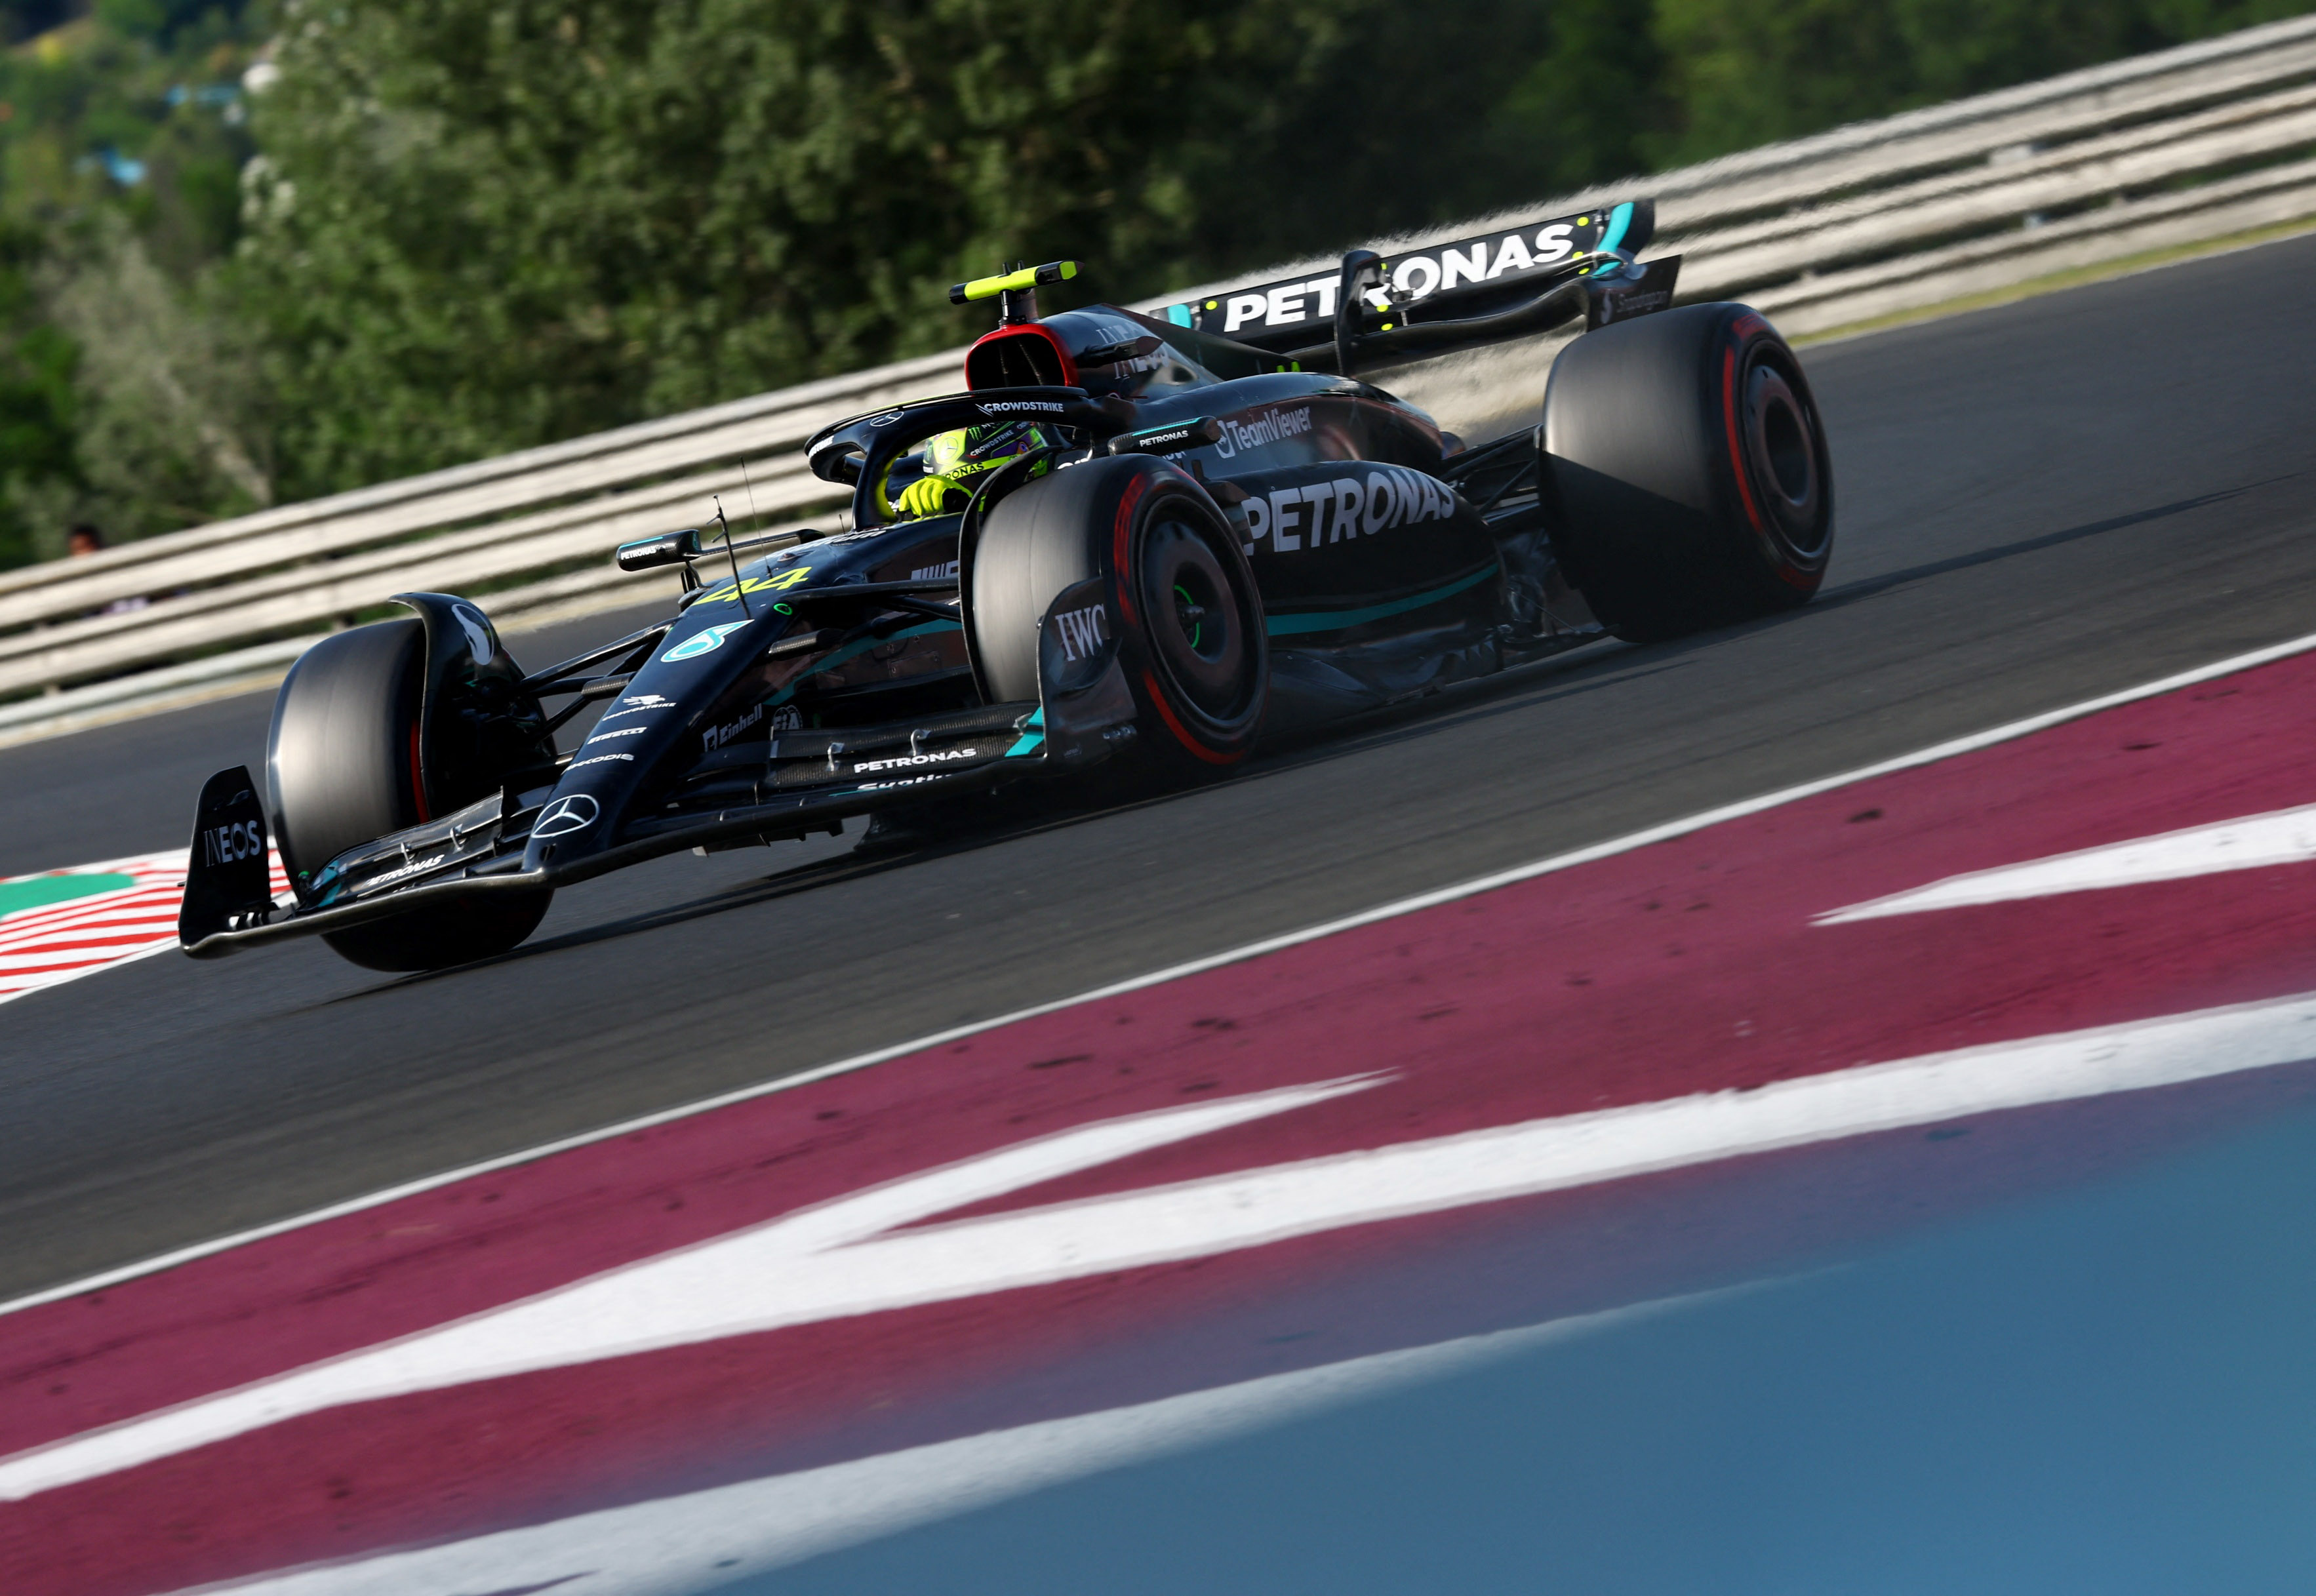 F1 LIVE Hungarian Grand Prix qualifying latest - Live